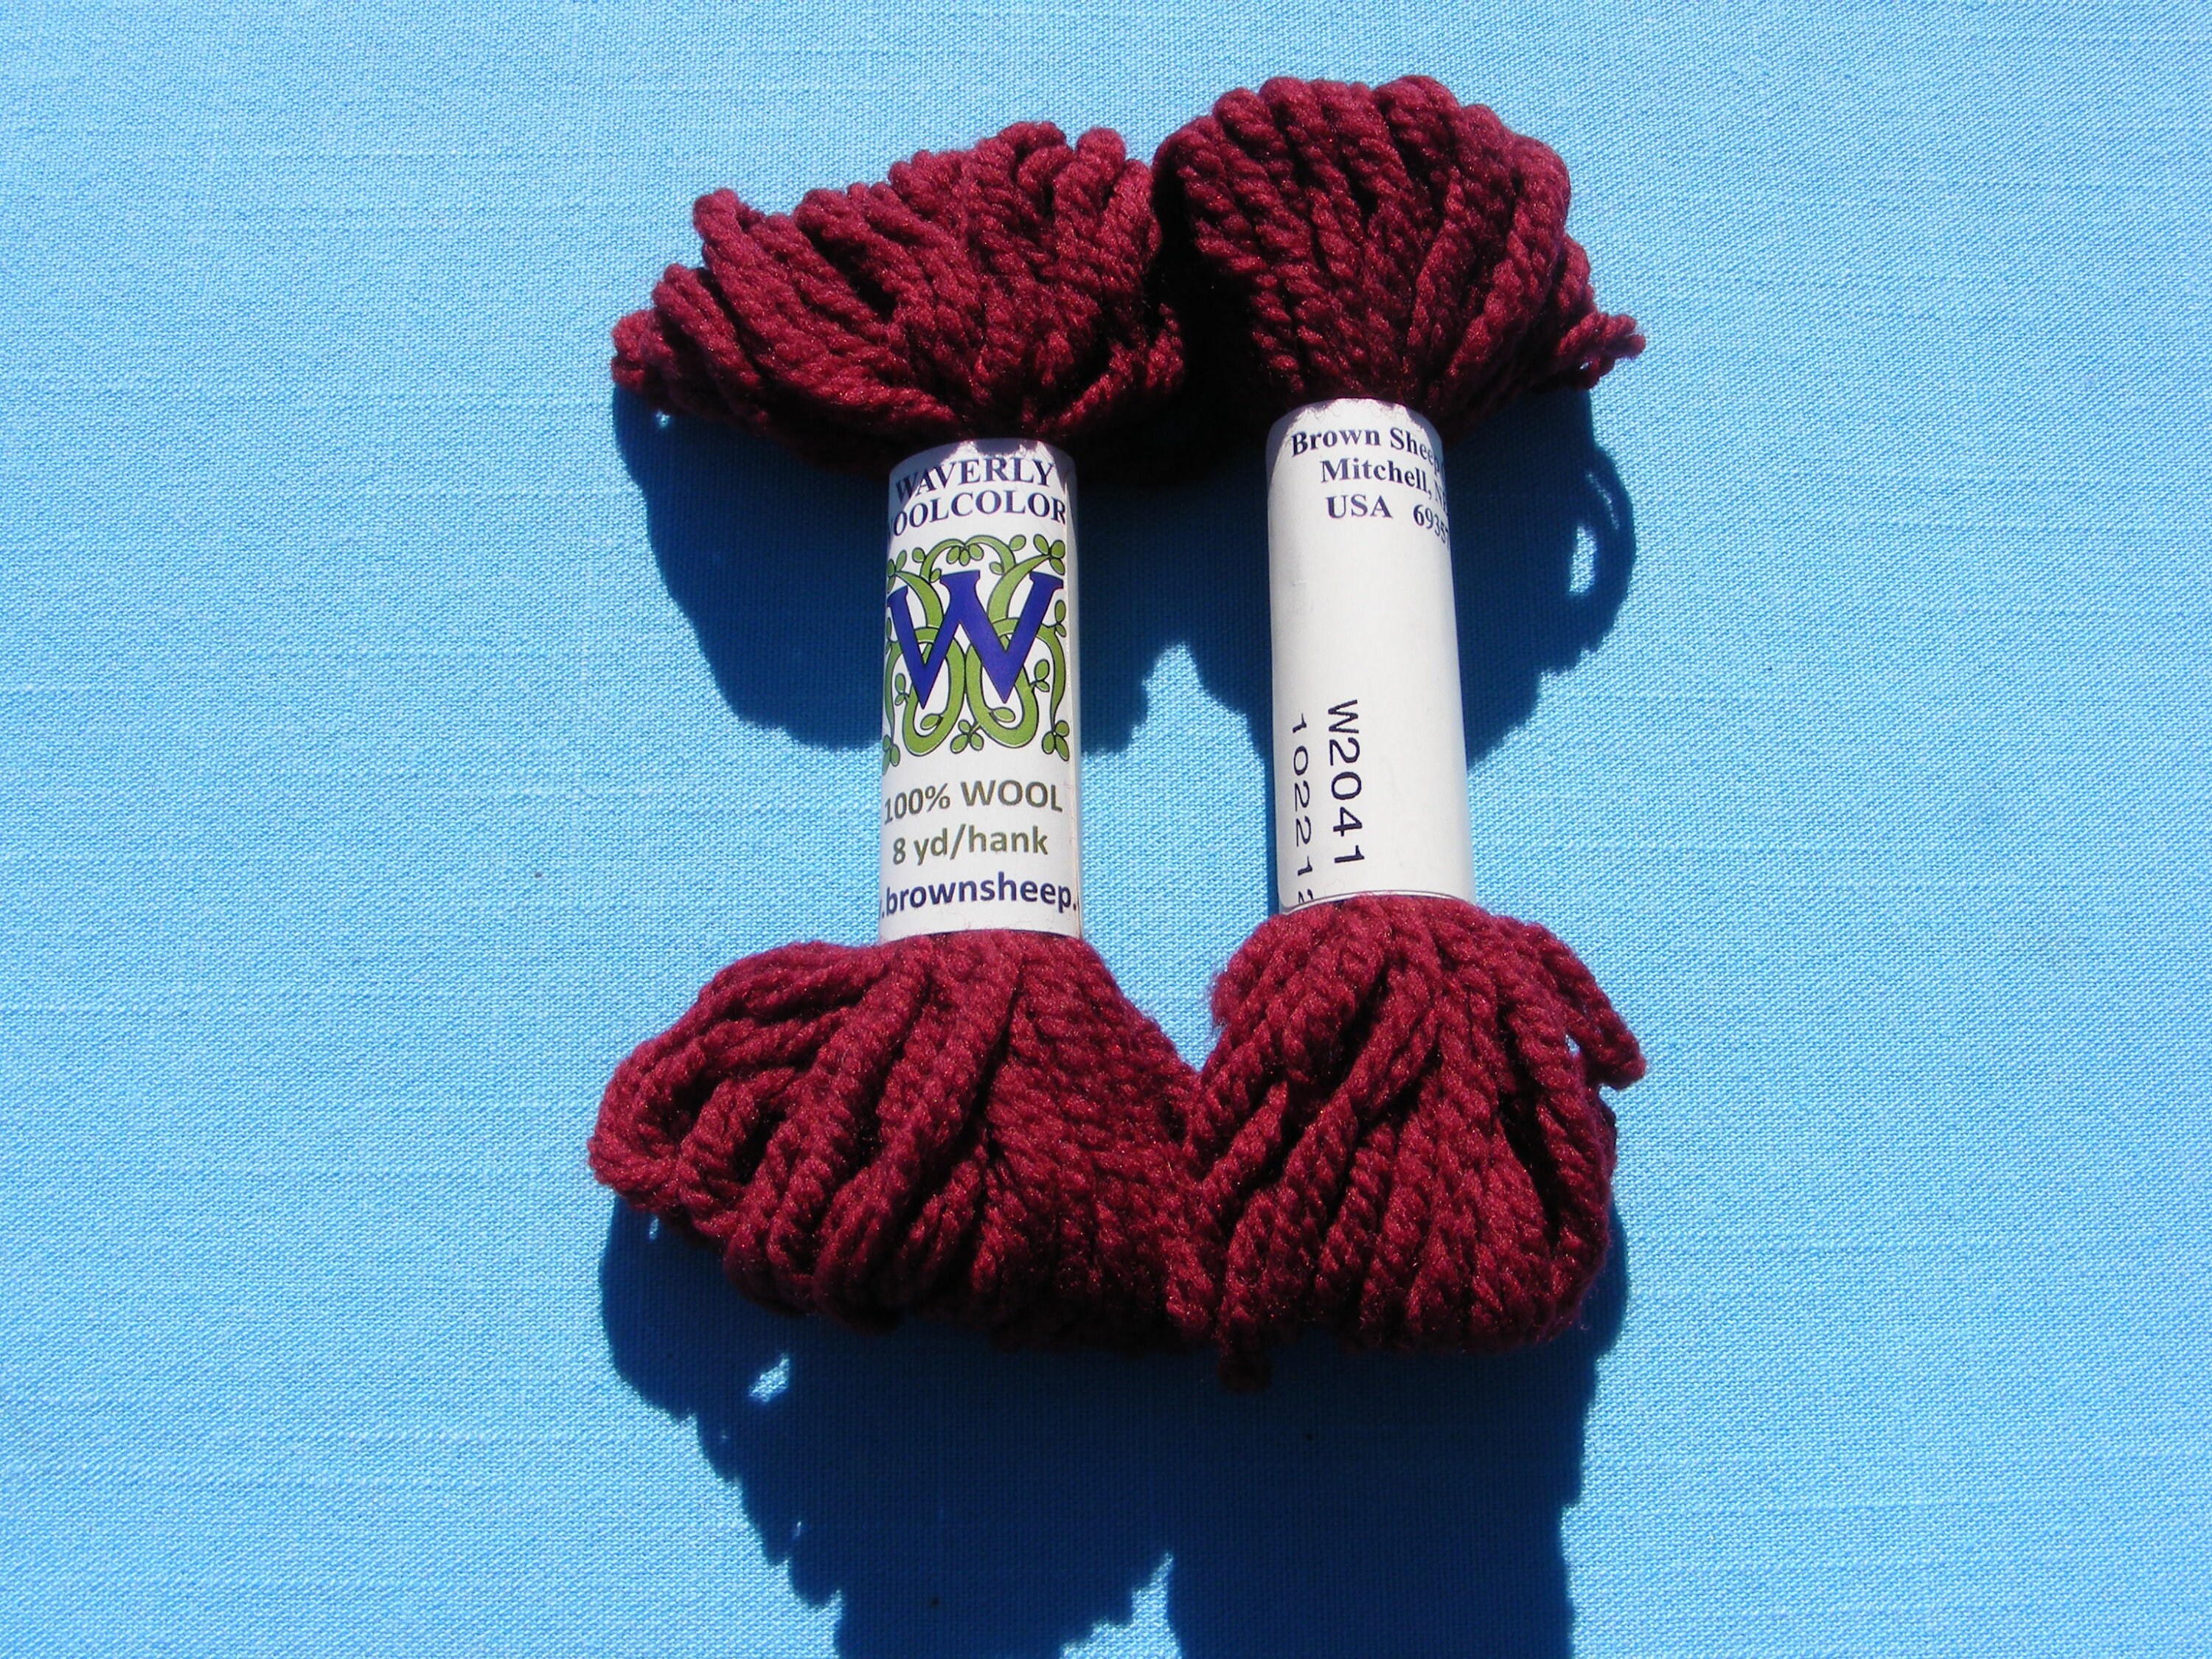 Dark Red Yarn — $18.00 per skein